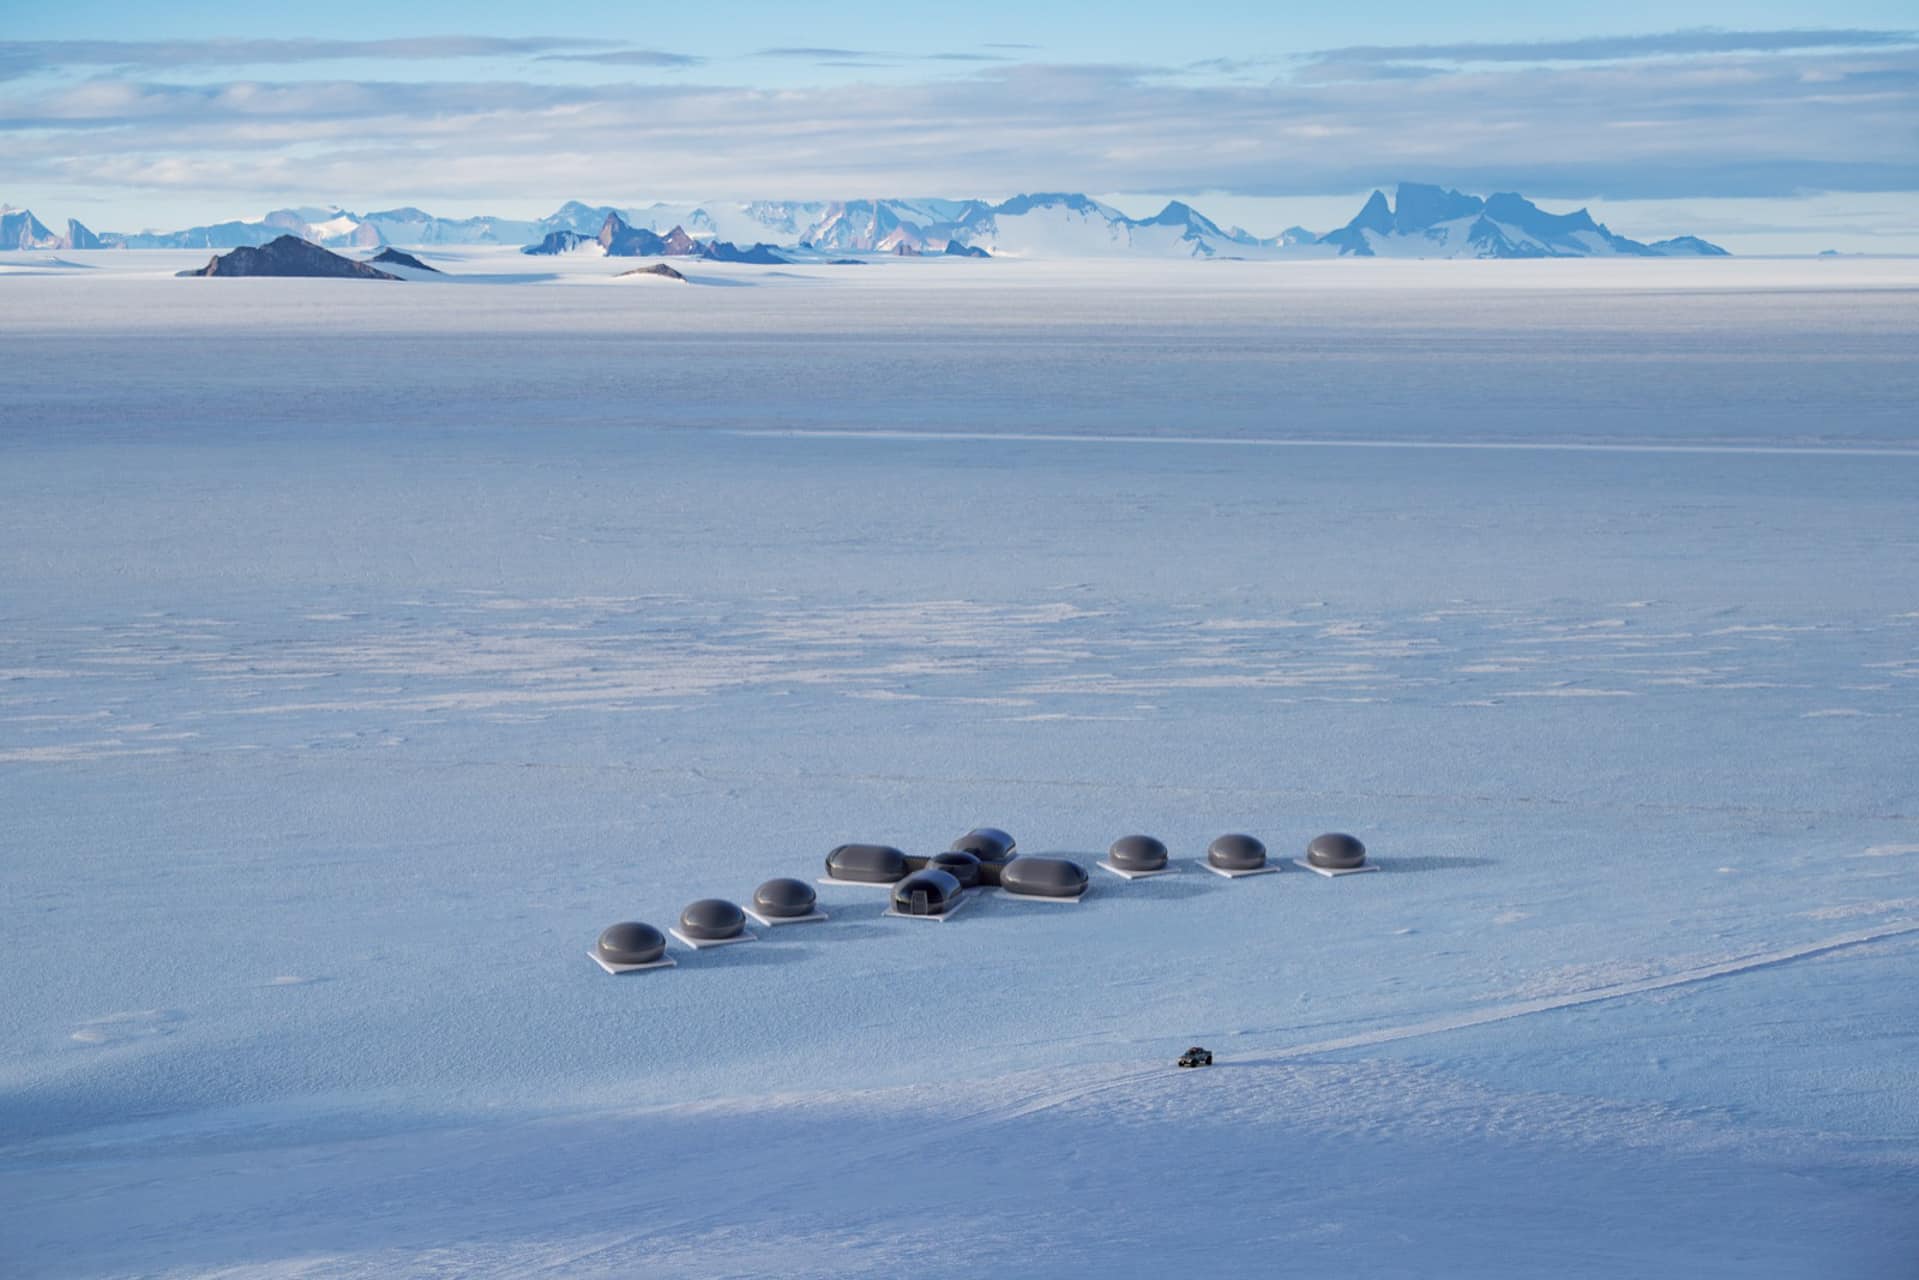 Echo camp in Antarctica.